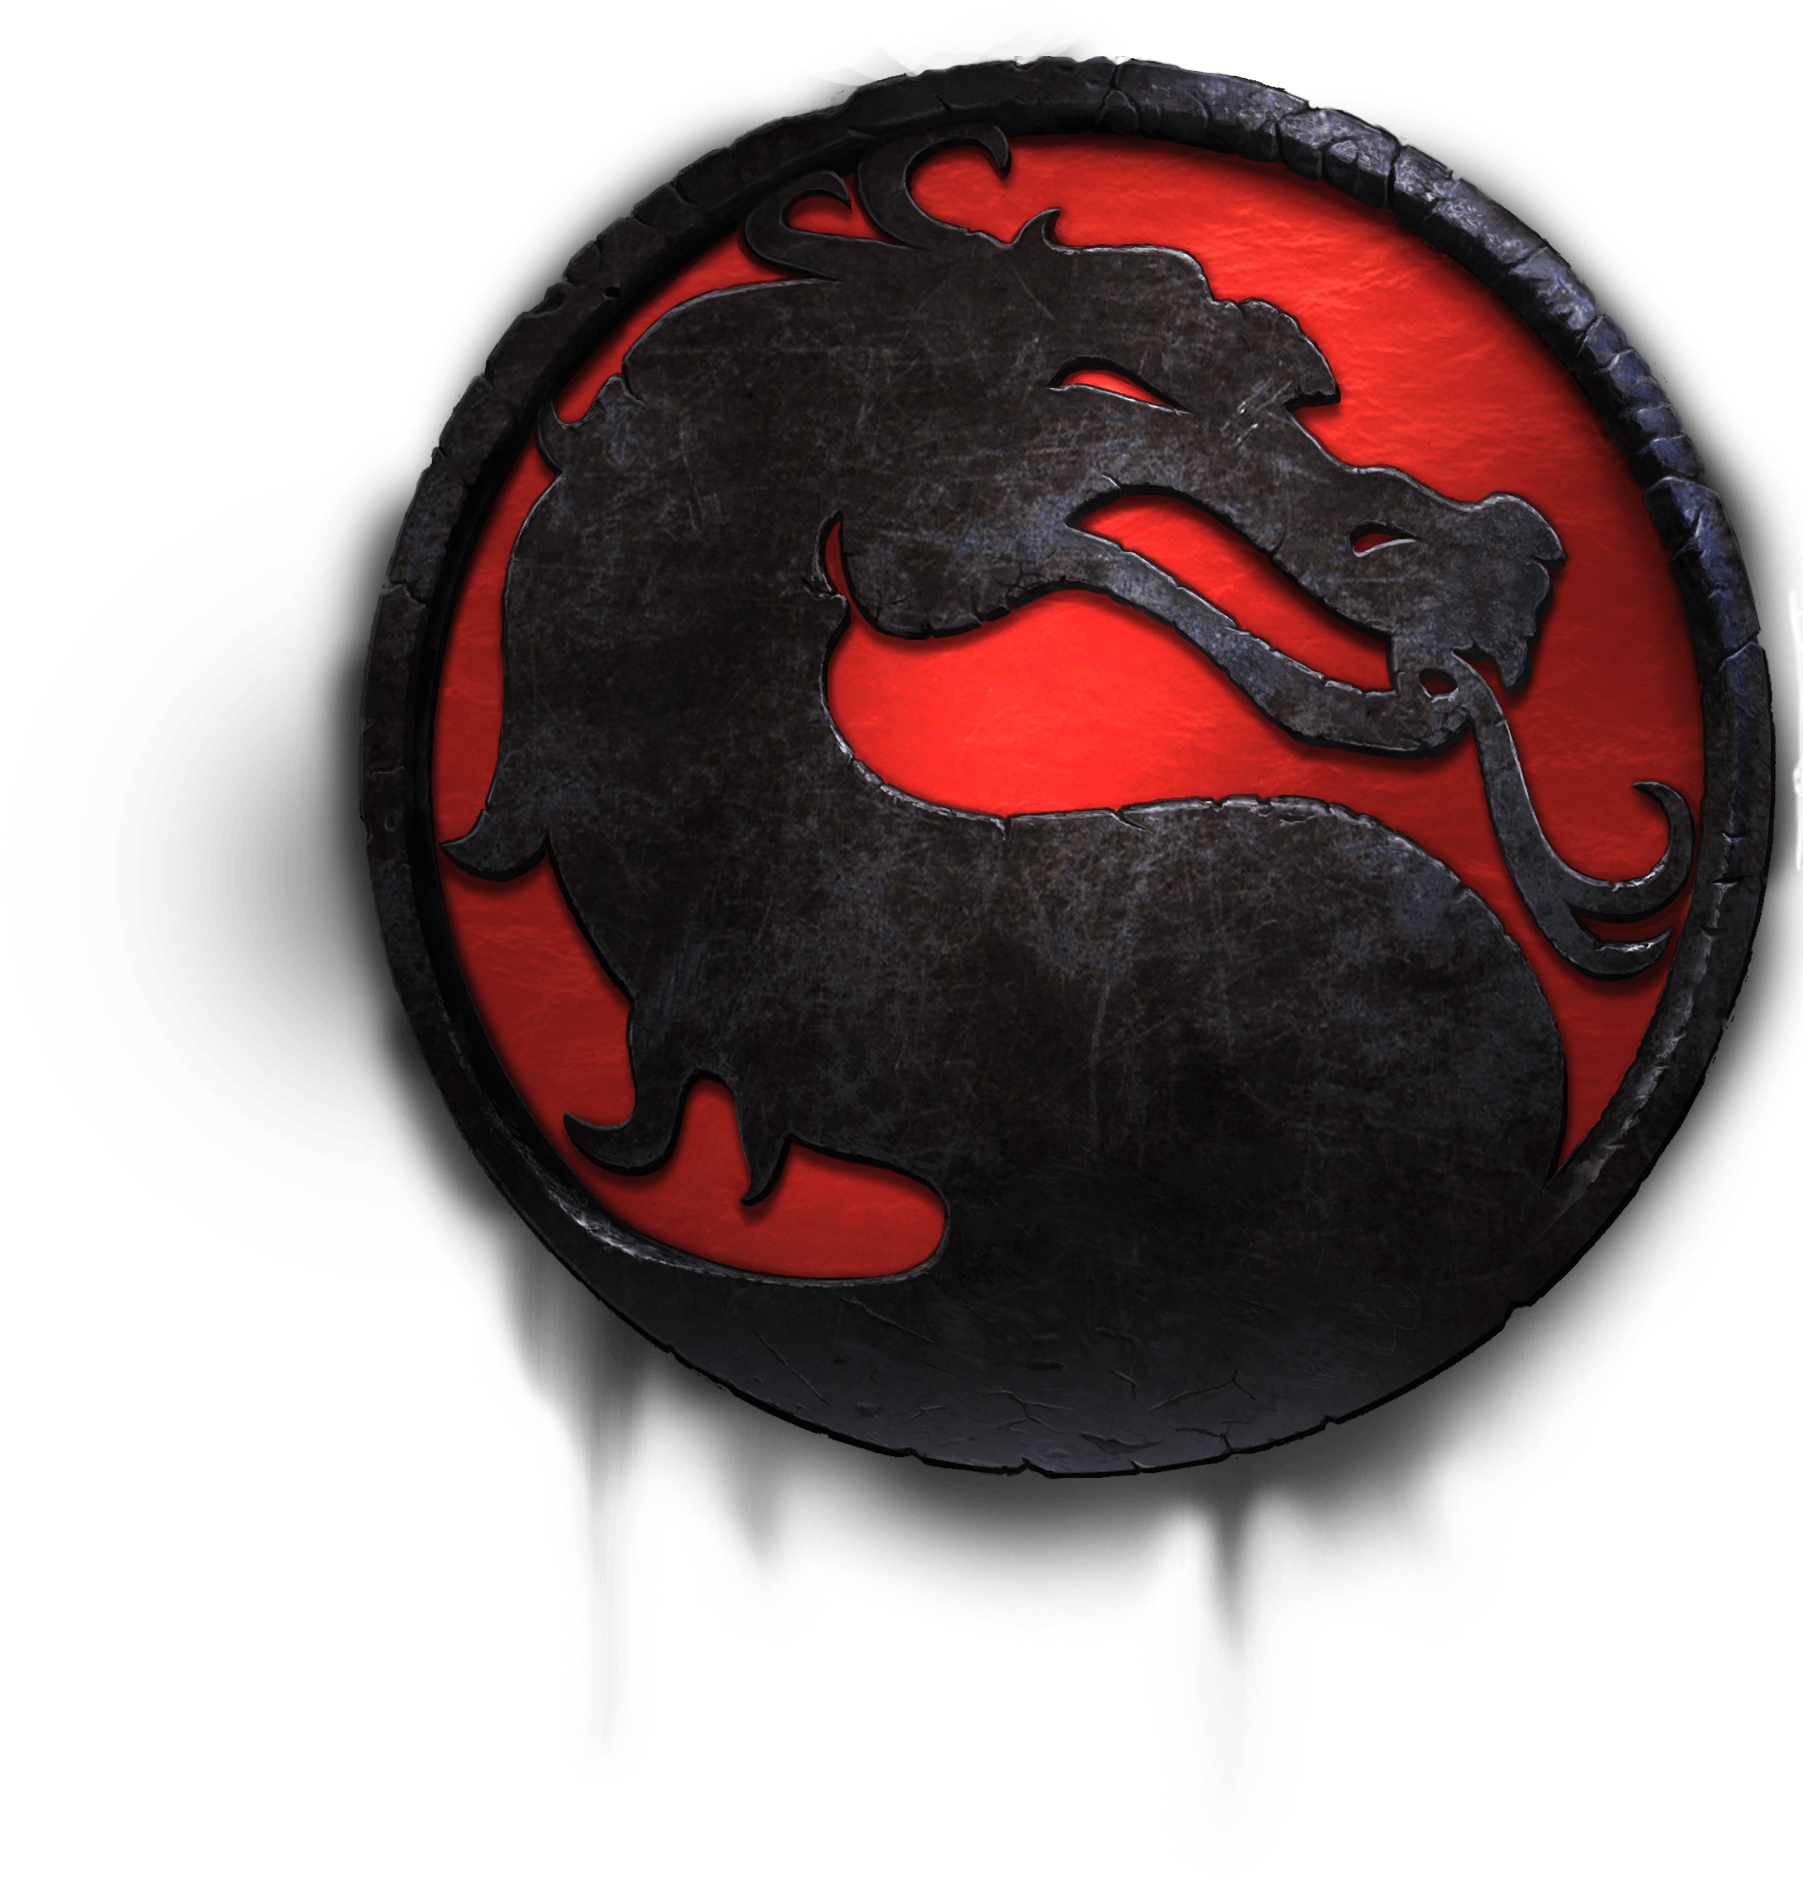 Mortal Kombat video juego PNG imagen de fondo